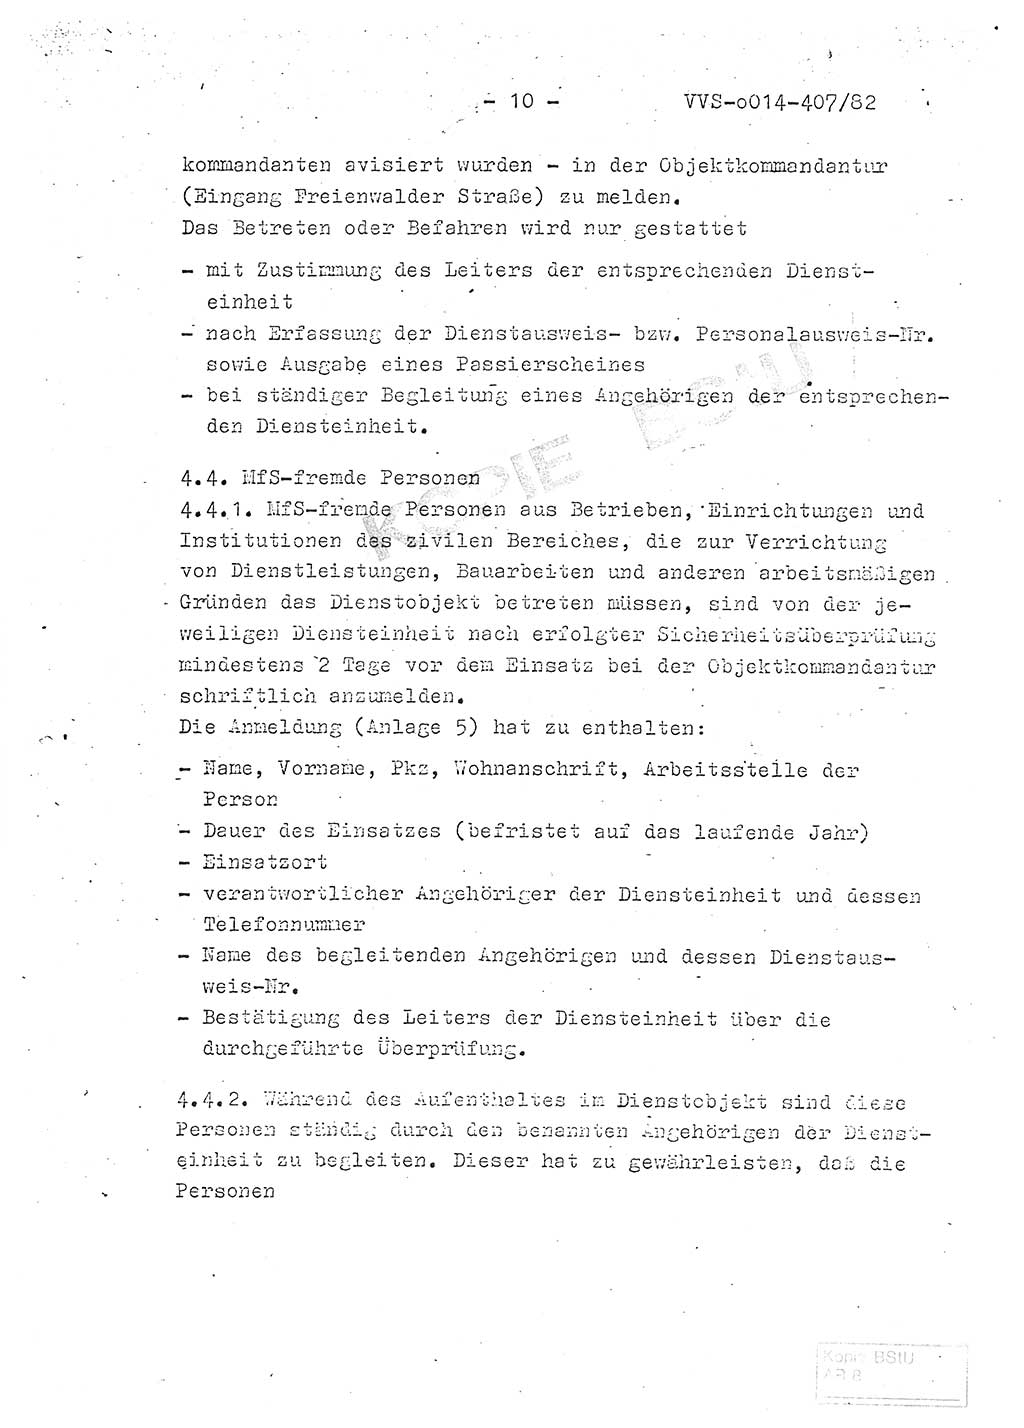 Ordnung Nr. 1/82 zur Gewährleistung von Sicherheit und Ordnung für das Objekt Berlin-Hohenschönhausen, Freienwalder Straße - Objektordnung -, Ministerium für Staatssicherheit (MfS) [Deutsche Demokratische Republik (DDR)], Hauptabteilung (HA) Ⅸ, Leiter, Verantwortlicher für das Dienstobjekt (DO) Berlin-Hohenschönhausen, Freienwalder Straße, Vertrauliche Verschlußsache (VVS) o014-407/82, Berlin 1982, Seite 10 (Obj.-Ordn. 1/82 DO Bln.-HsH. MfS DDR HA Ⅸ Ltr. VVS o014-407/82 1982, S. 10)